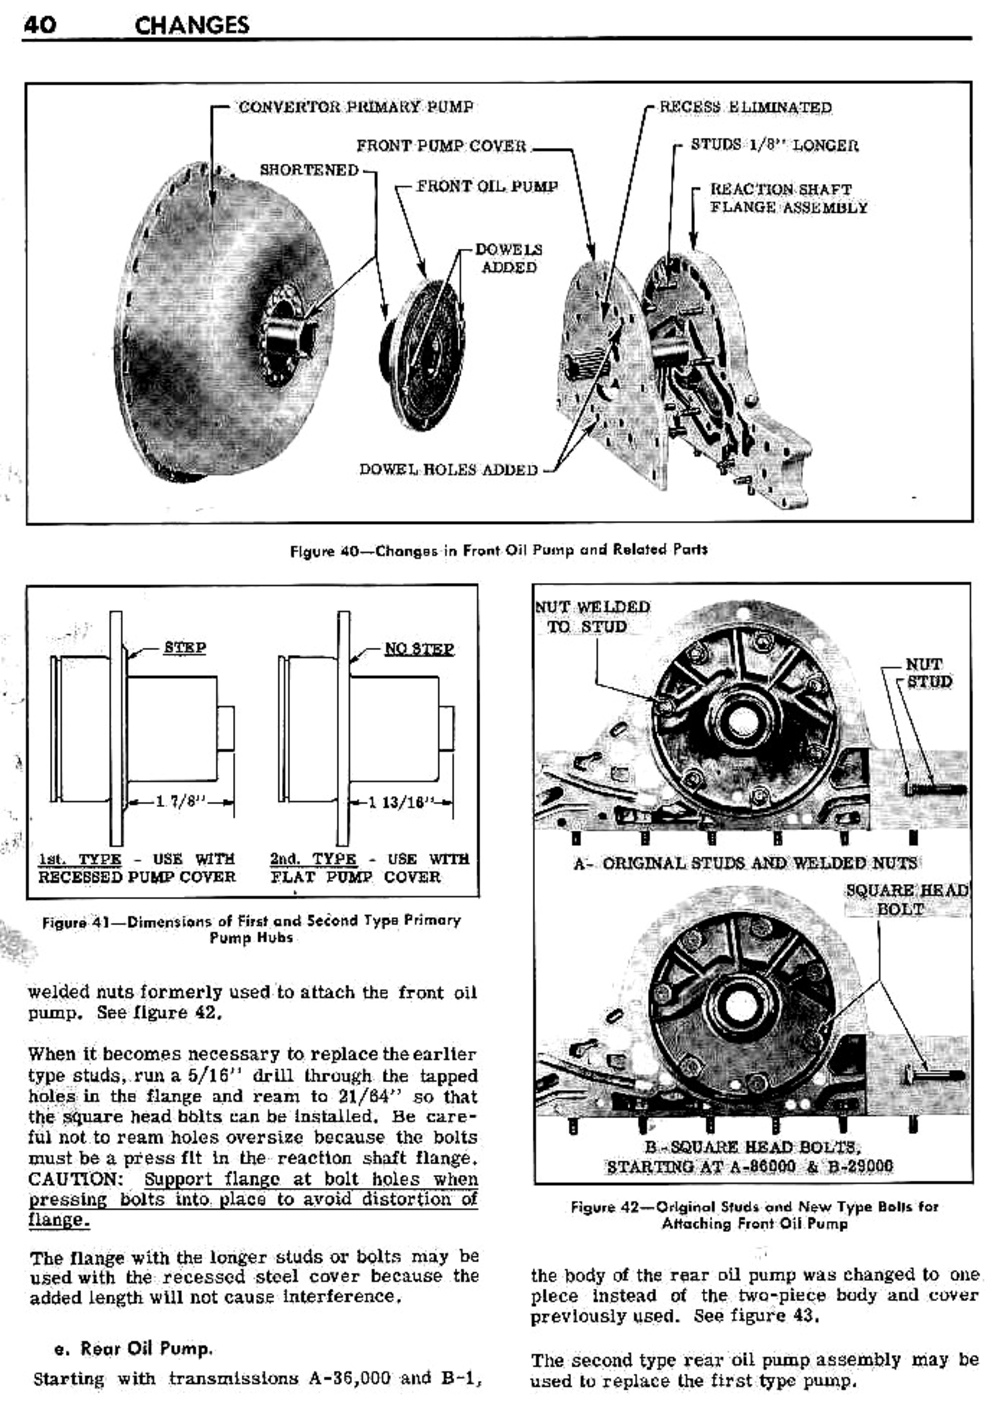 n_04 1948 Buick Transmission - Design Changes-002-002.jpg